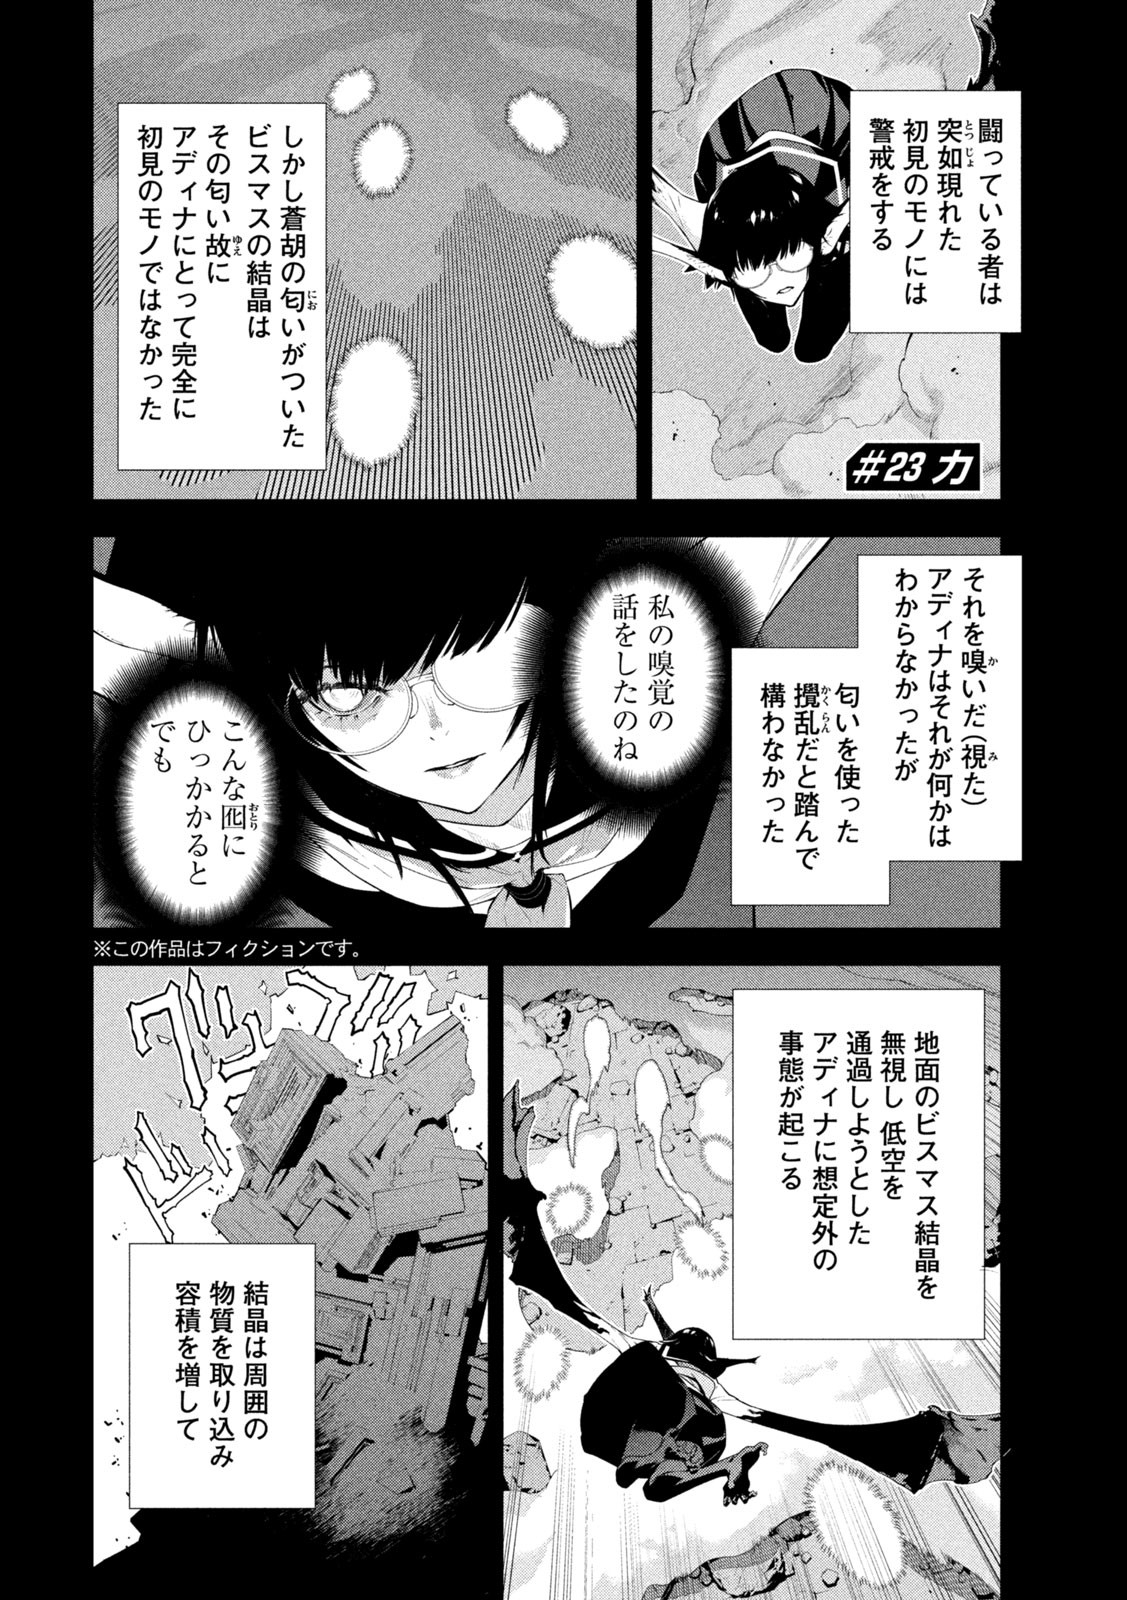 Seirei Tsukai – Chito no Jinshi - Chapter 23 - Page 2